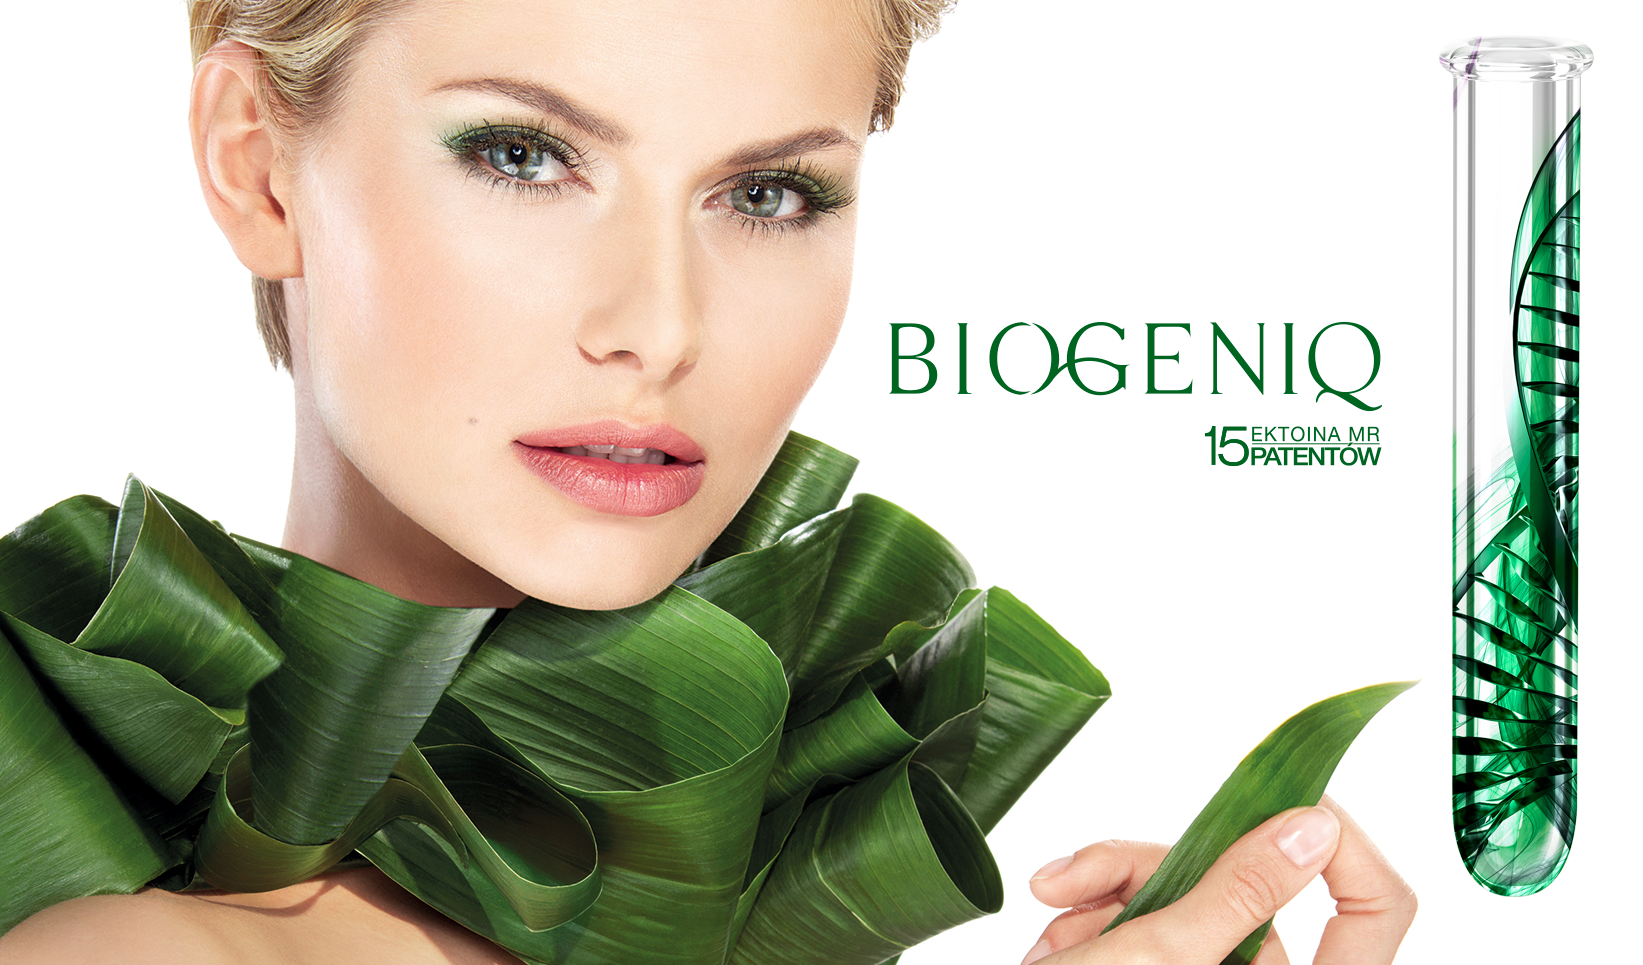 Először is – fiatalság! Dermika kozmetikai sorozata, Biogeniq